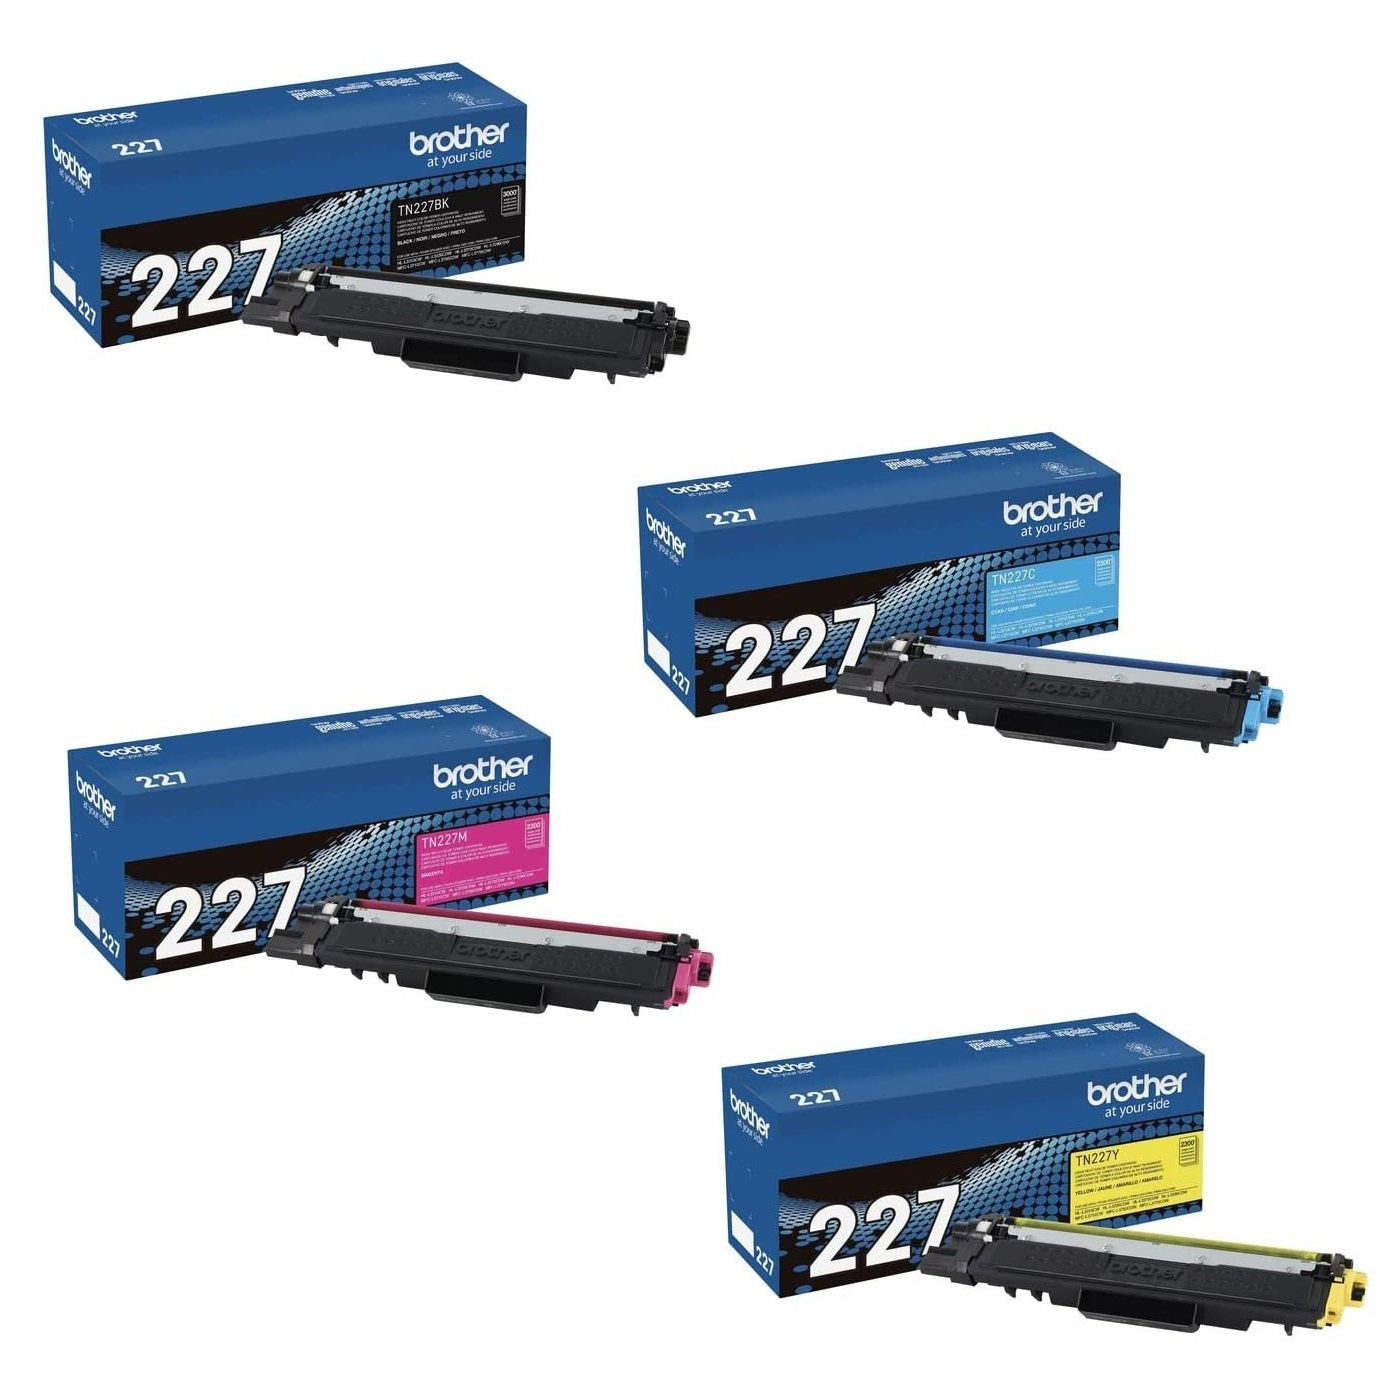 Wholesale Tn267 Tn277 Tn287 Tn297 Color Toner Cartridge for Brother Hl- L3210cw L3230cdw L3270cdw - China Color Toner Cartridge, Toner Cartridge